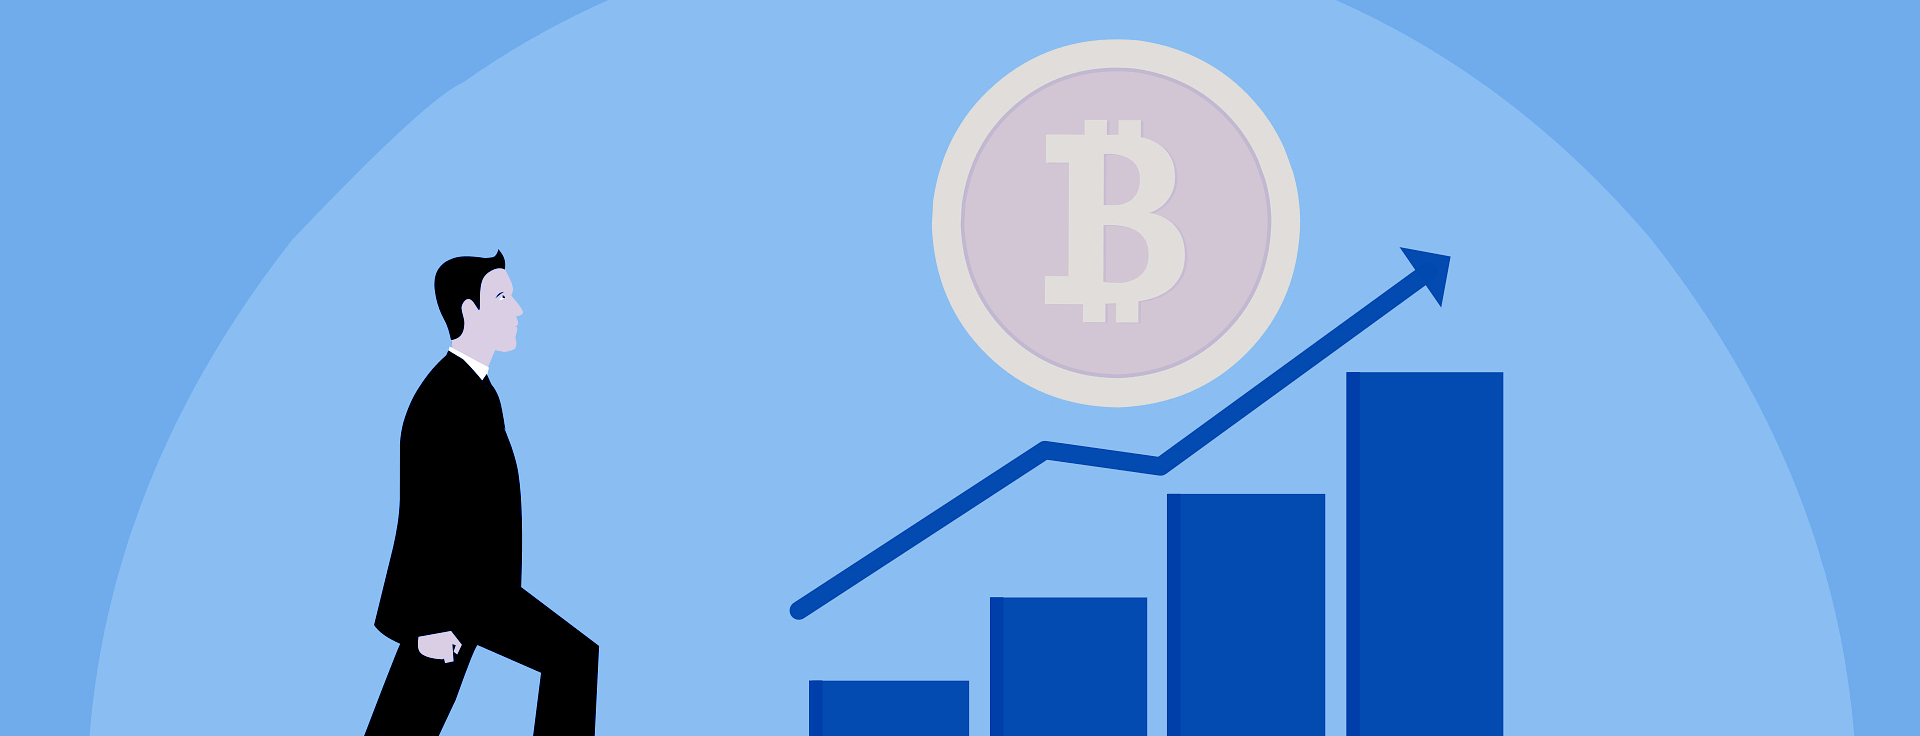 Blogg: Varför är det värt det att investera direkt i bitcoin?